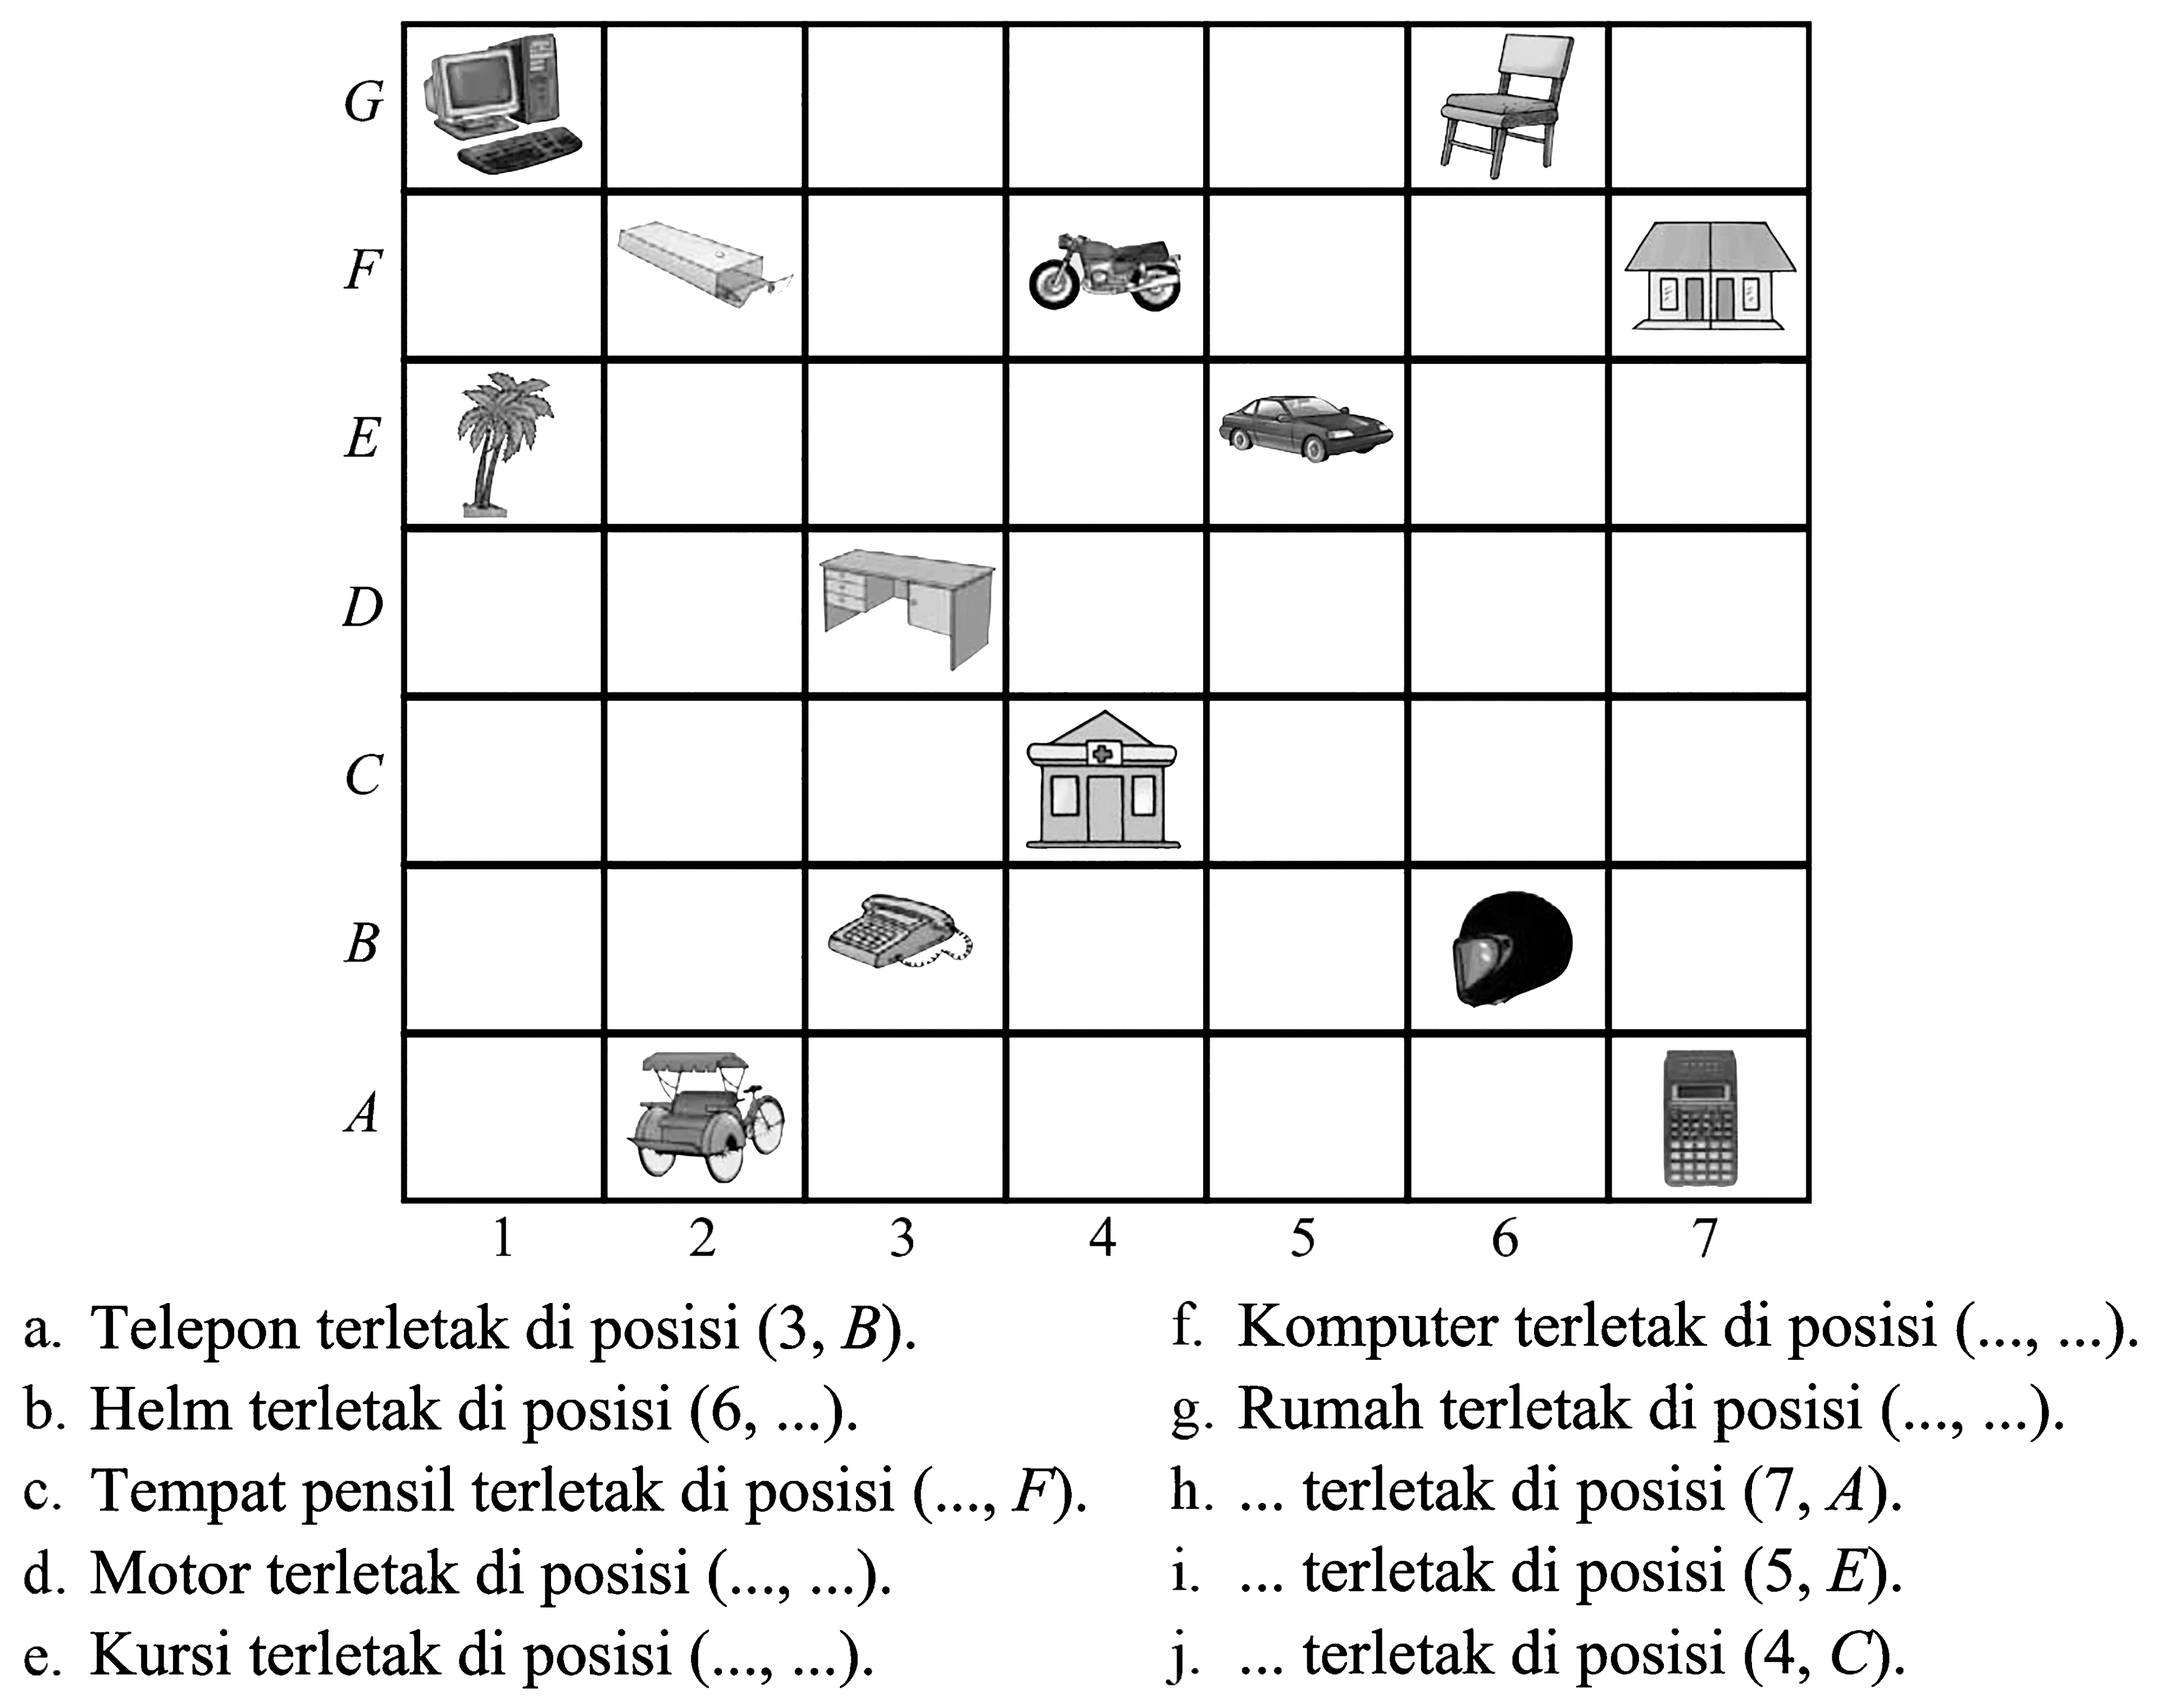 G F E D C B A 1 2 3 4 5 6 7
 a. Telepon terletak di posisi (3, B). f. Komputer terletak di posisi ( , ) b. Helm terletak di posisi (6, ) g. Rumah terletak di posisi ( , ) c. Tempat pensil terletak di poSisi (, F) h. terletak di posisi (7,A). d. Motor terletak di posisi ( , ) i. .. terletak di posisi (5,E). e. Kursi terletak di posisi ( , ) j. ... terletak di posisi (4, C).